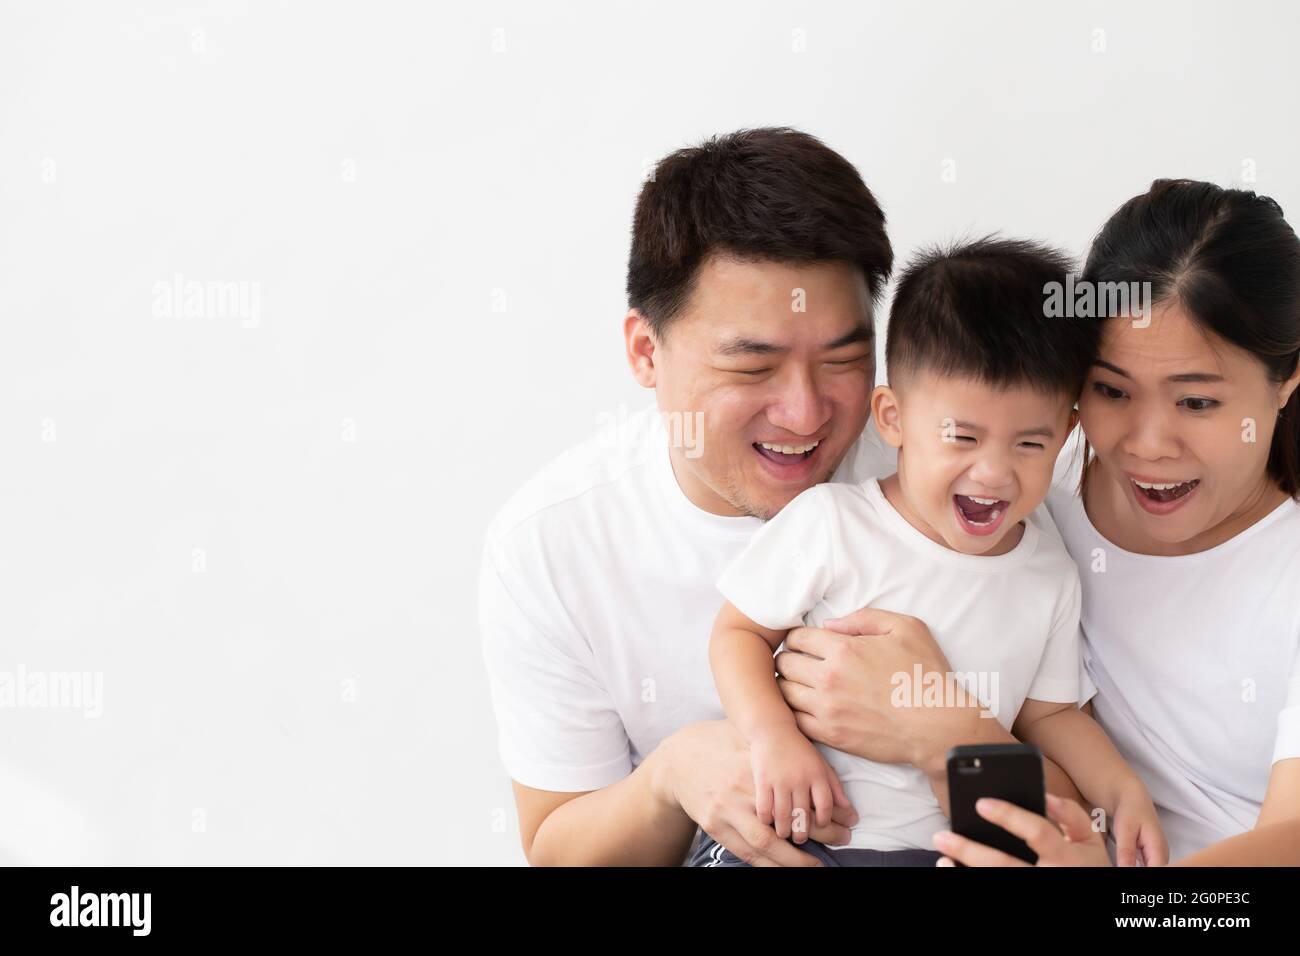 Fröhliche junge asiatische Familie mit Sohn lachen beim Betrachten von lustigen Videos auf dem Smartphone, Eltern mit Kindern spielen gerne Spiele oder unterhalten sich mit Mobi Stockfoto